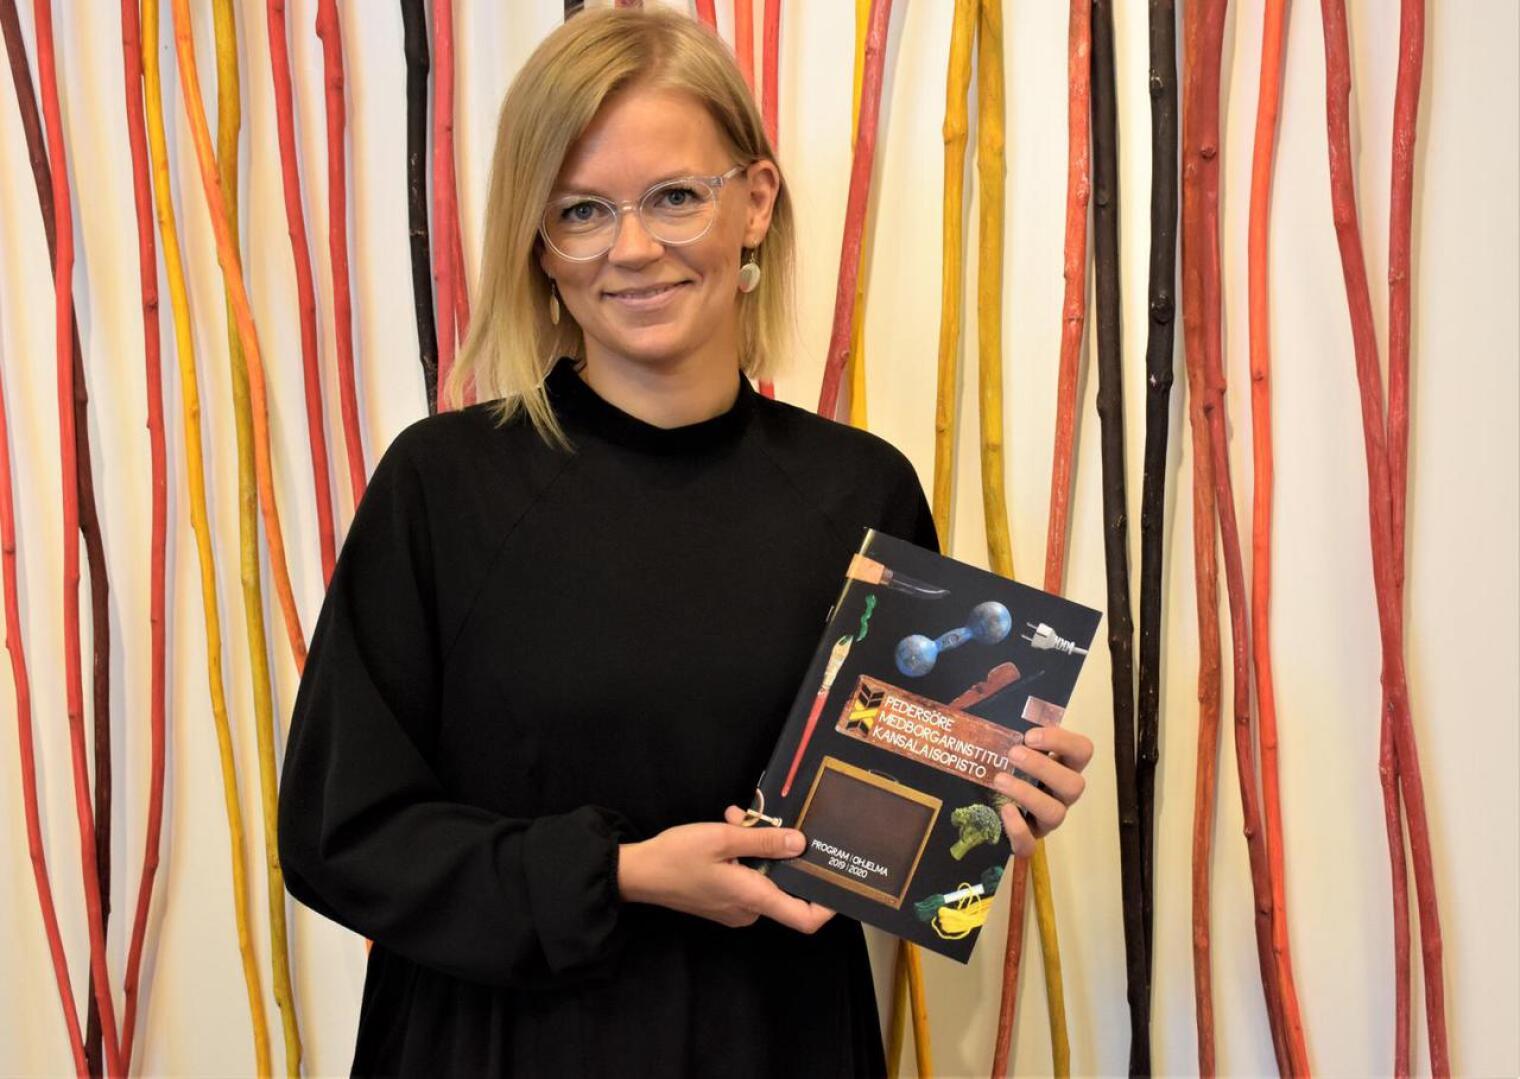 Rehtorina Kansalaisopisto MI:llä helmikuussa aloittanut Joanna Vikström Eklöv on tuore kasvo opistolla.